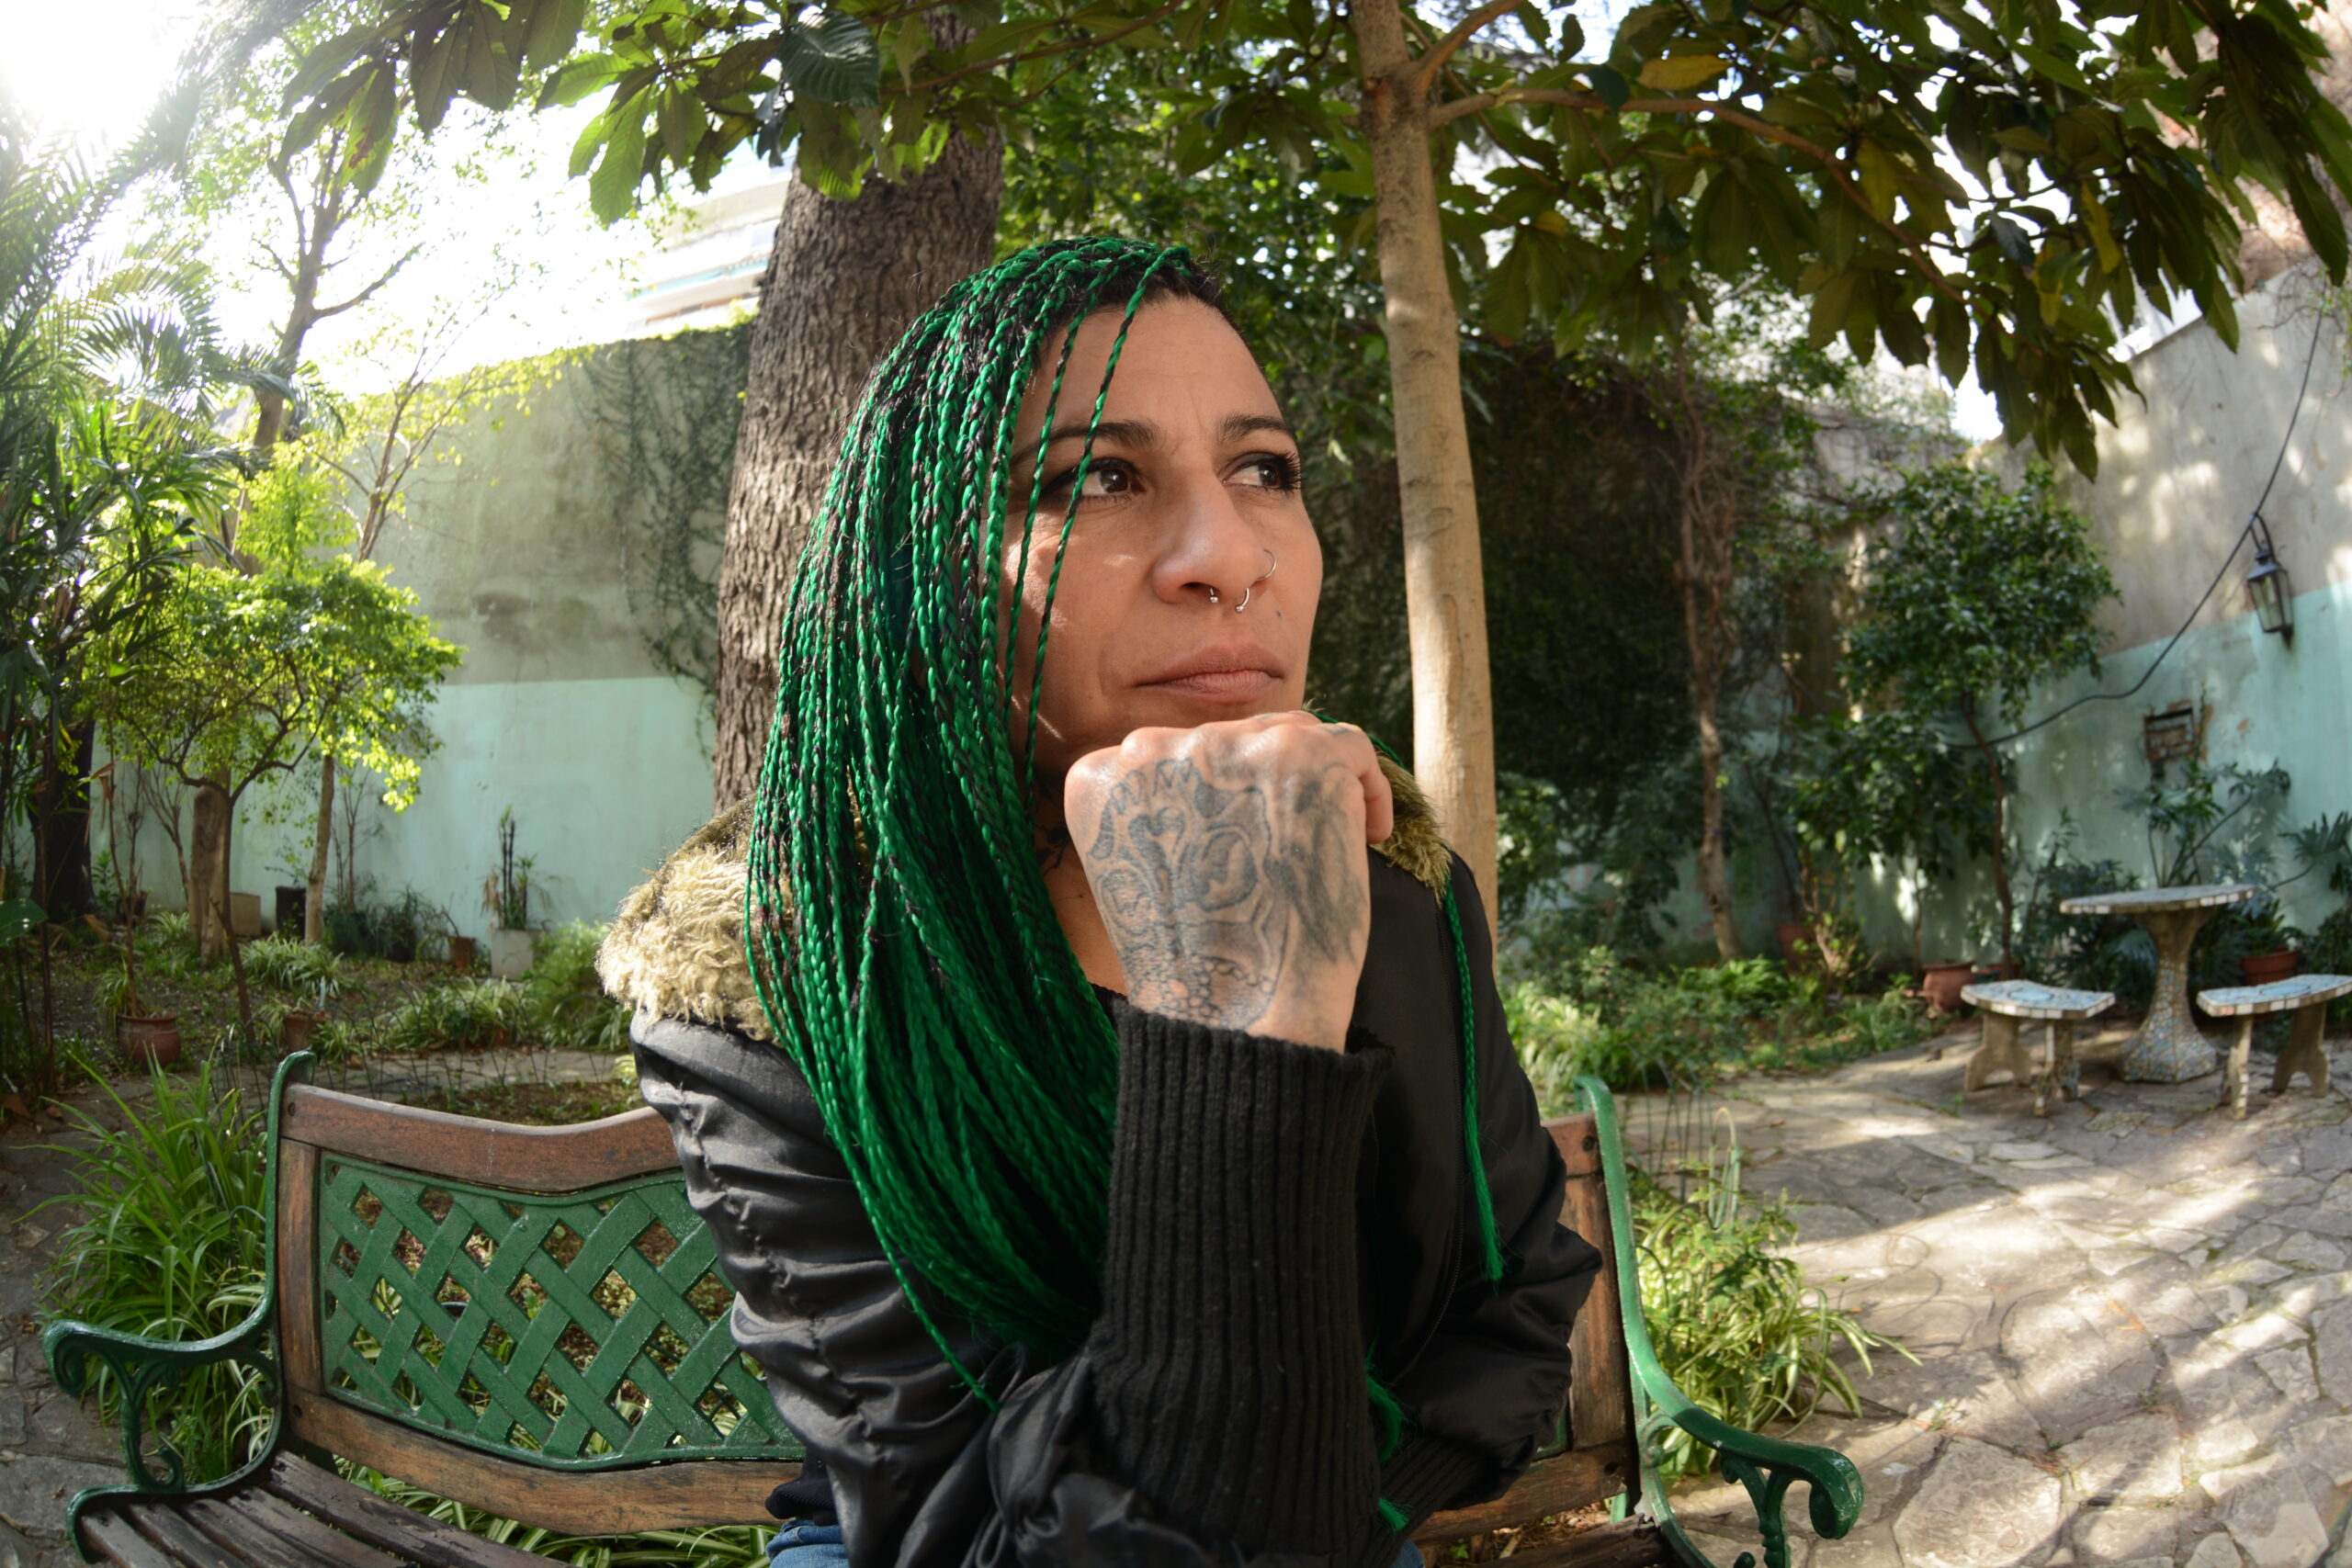 Caryna Moreno, sentada en el banco de un jardín, con una de sus manos apoyadas sobre la pera y una mirada pensativa. Tiene rastas de color verde en el pelo